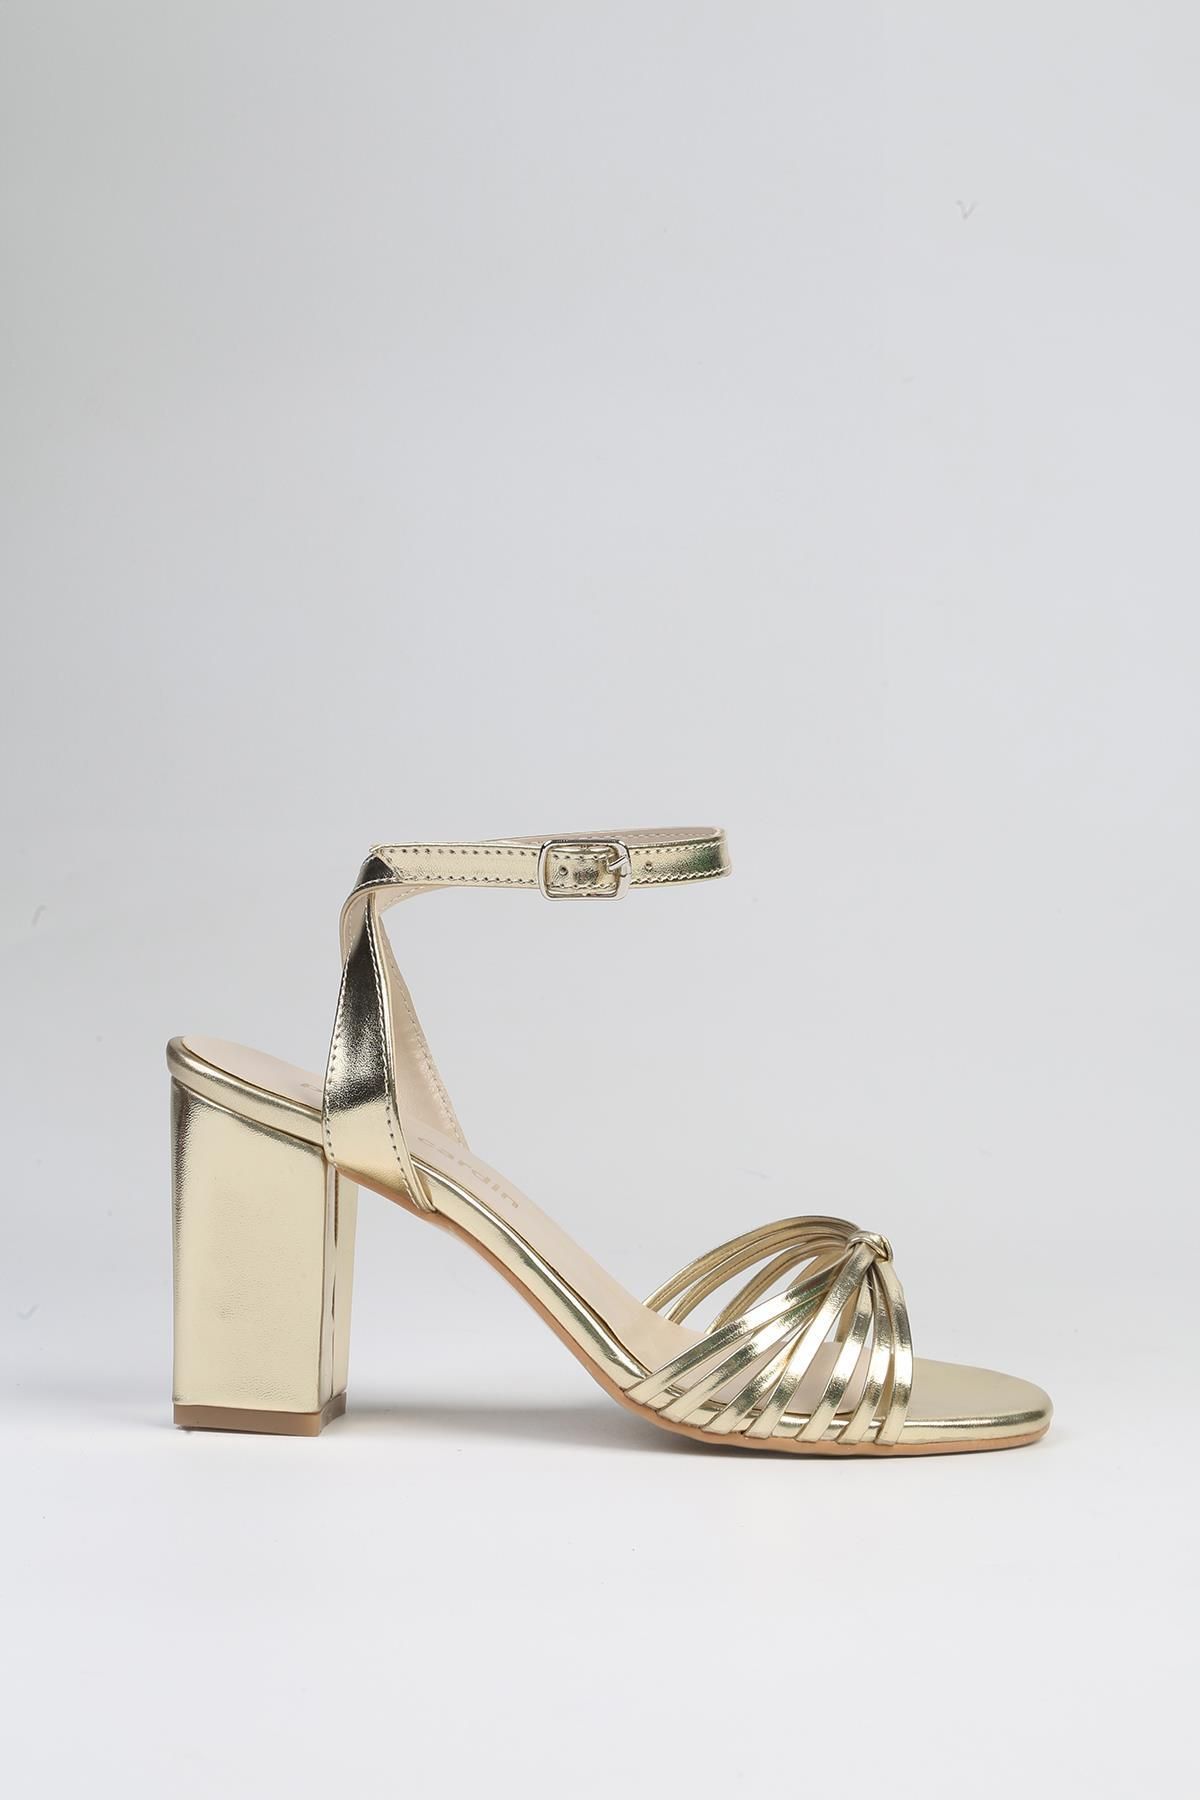 Pierre Cardin ® | PC-53057- 3959 Altın-Kadın Topuklu Ayakkabı